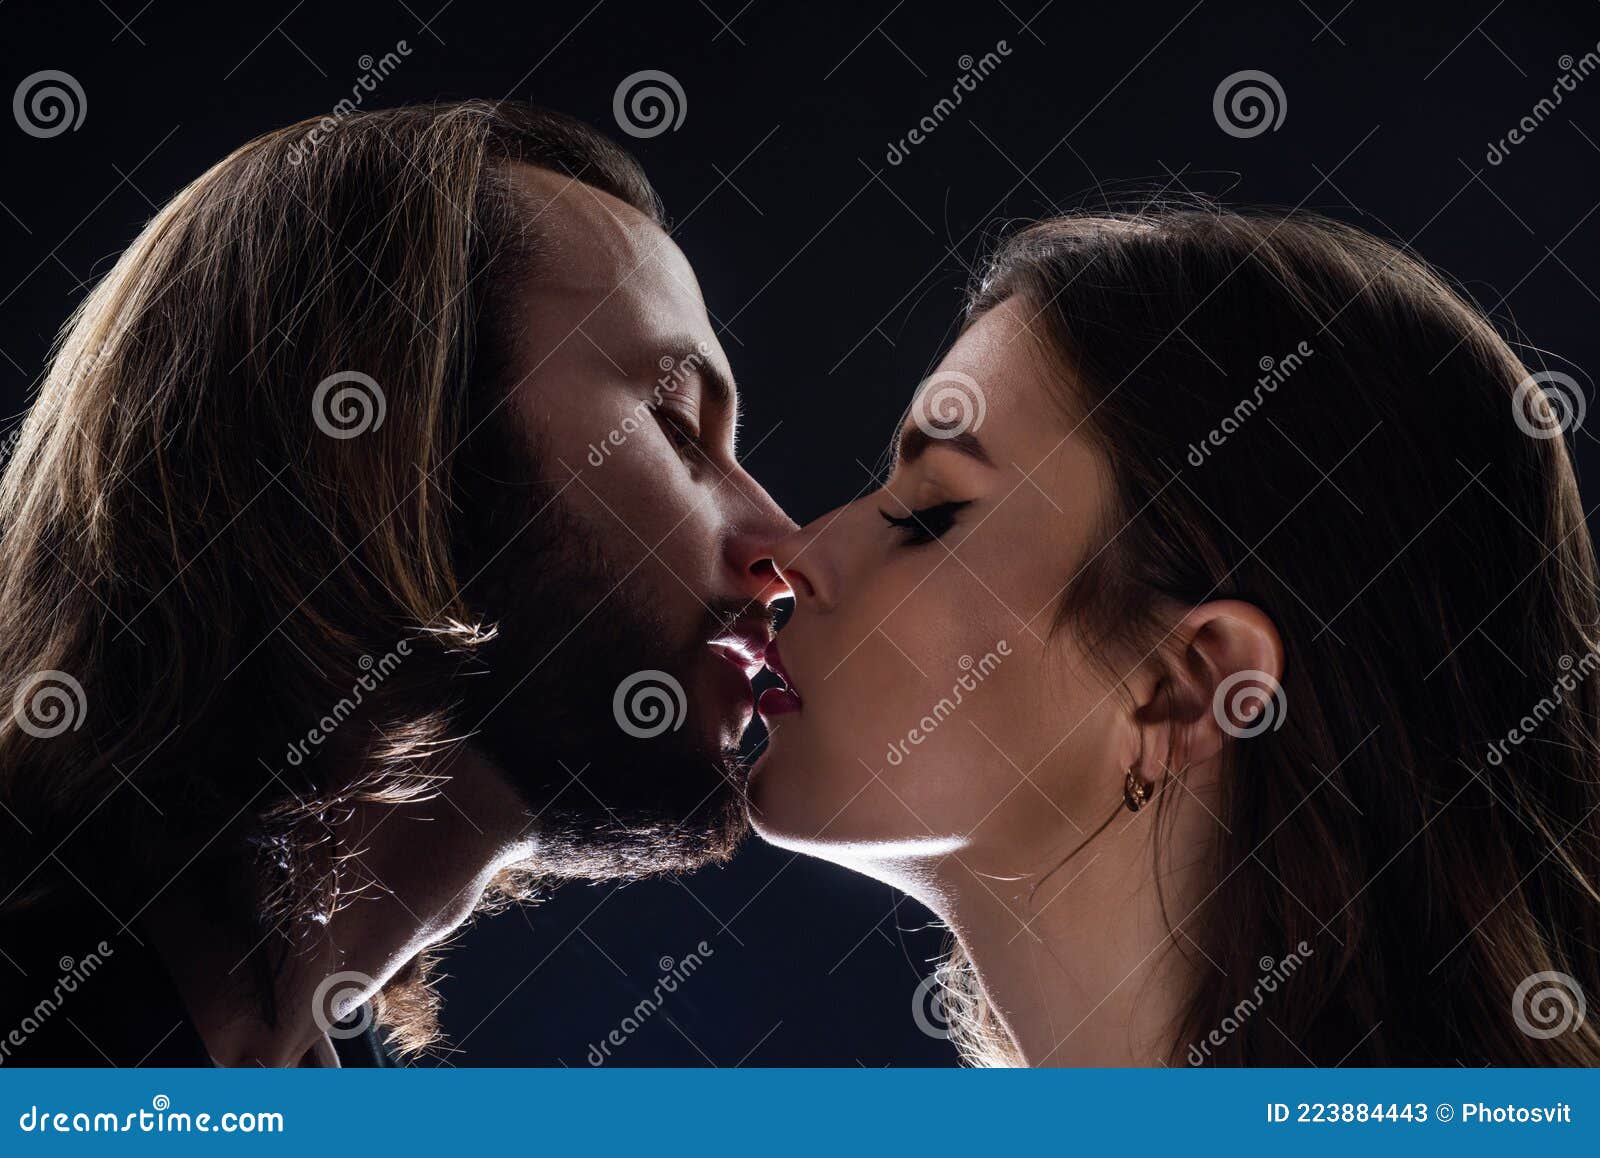 считается ли изменой когда девушка с девушкой целуются фото 83